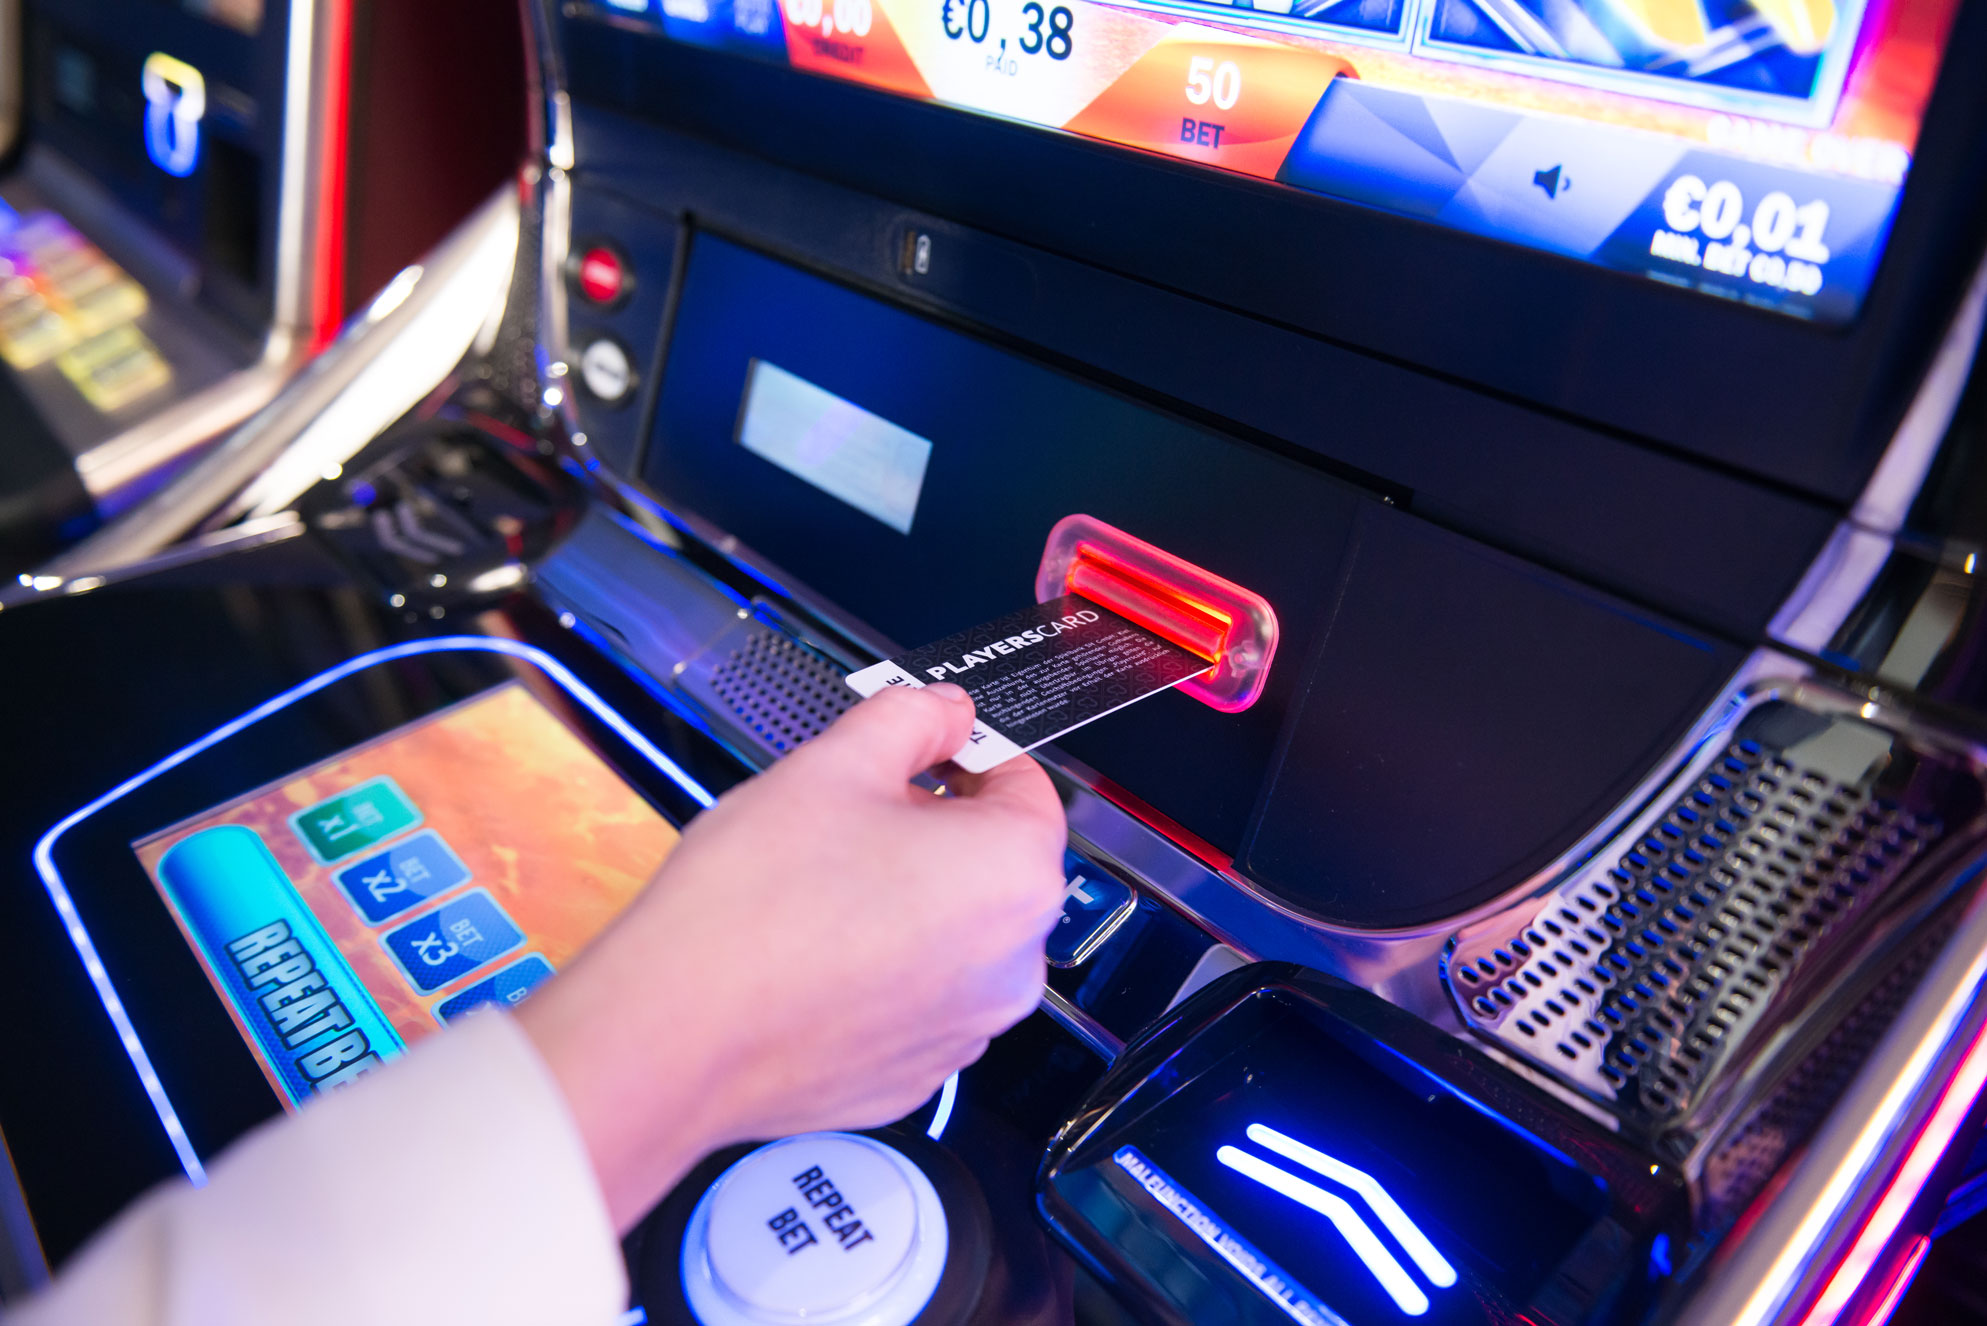 Jackpot-Automat des Casinos Schenefeld